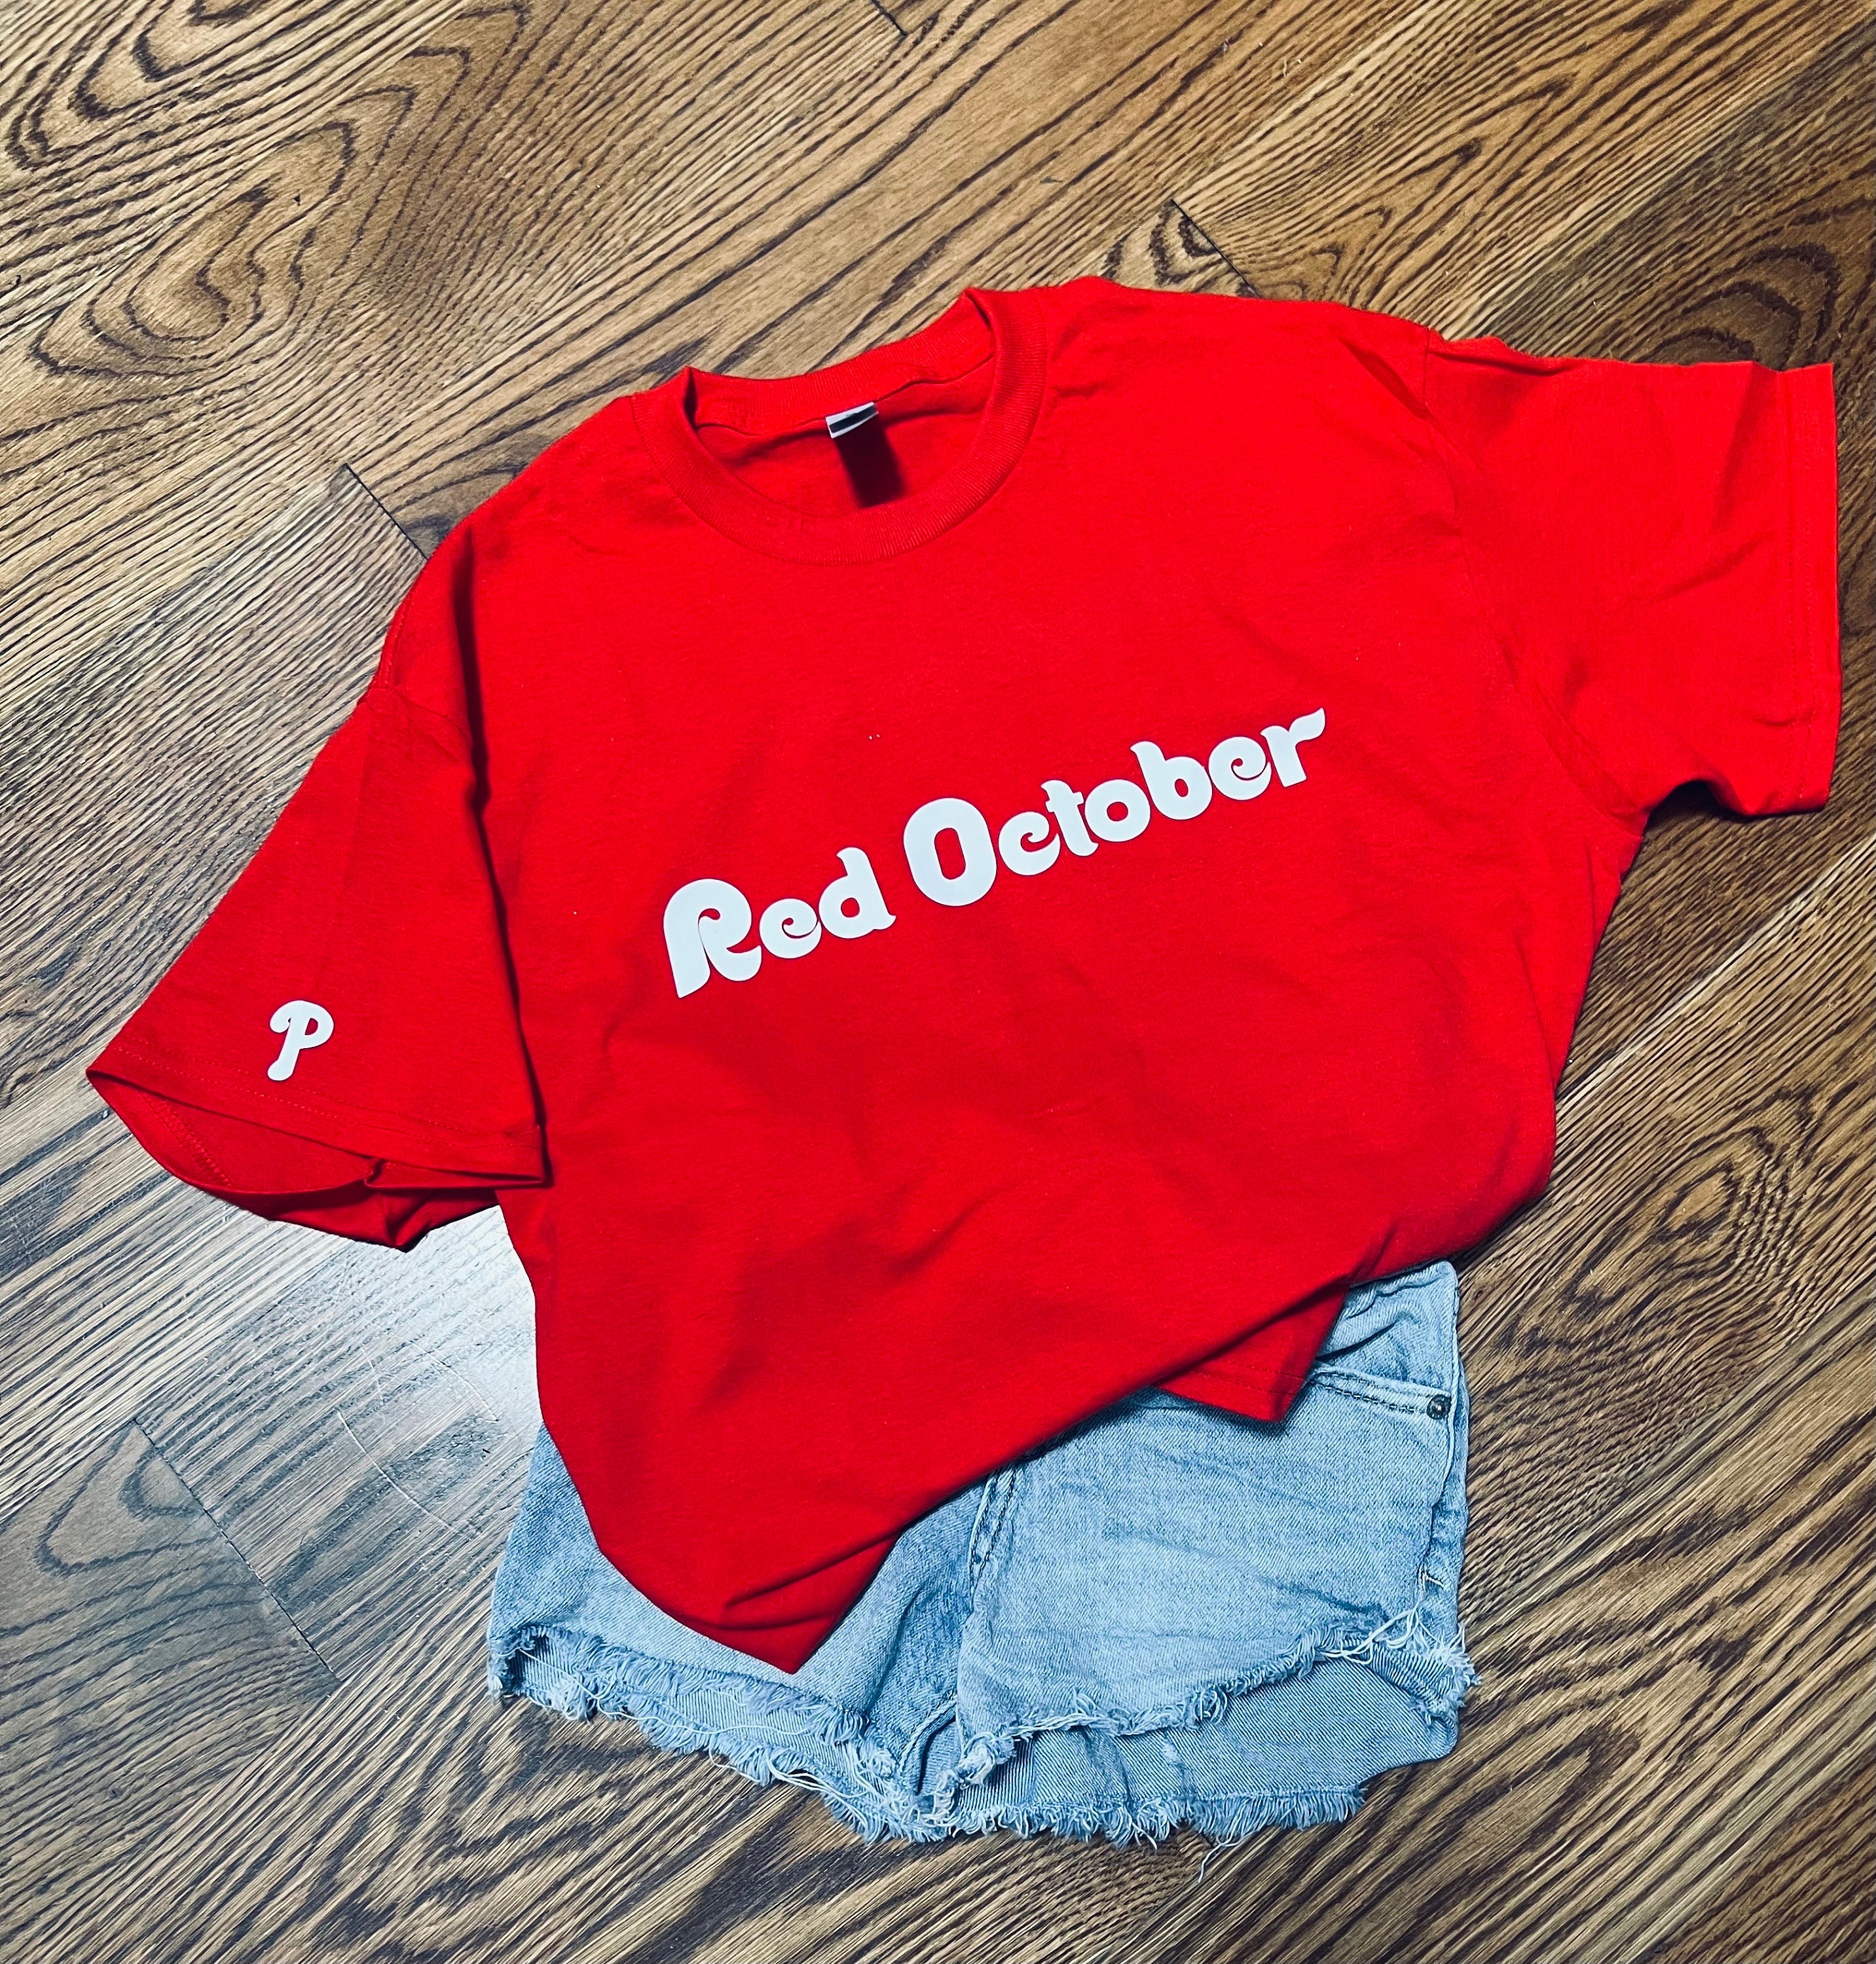 Red October Philadelphia Baseball Shirt Gifts for Phillies 